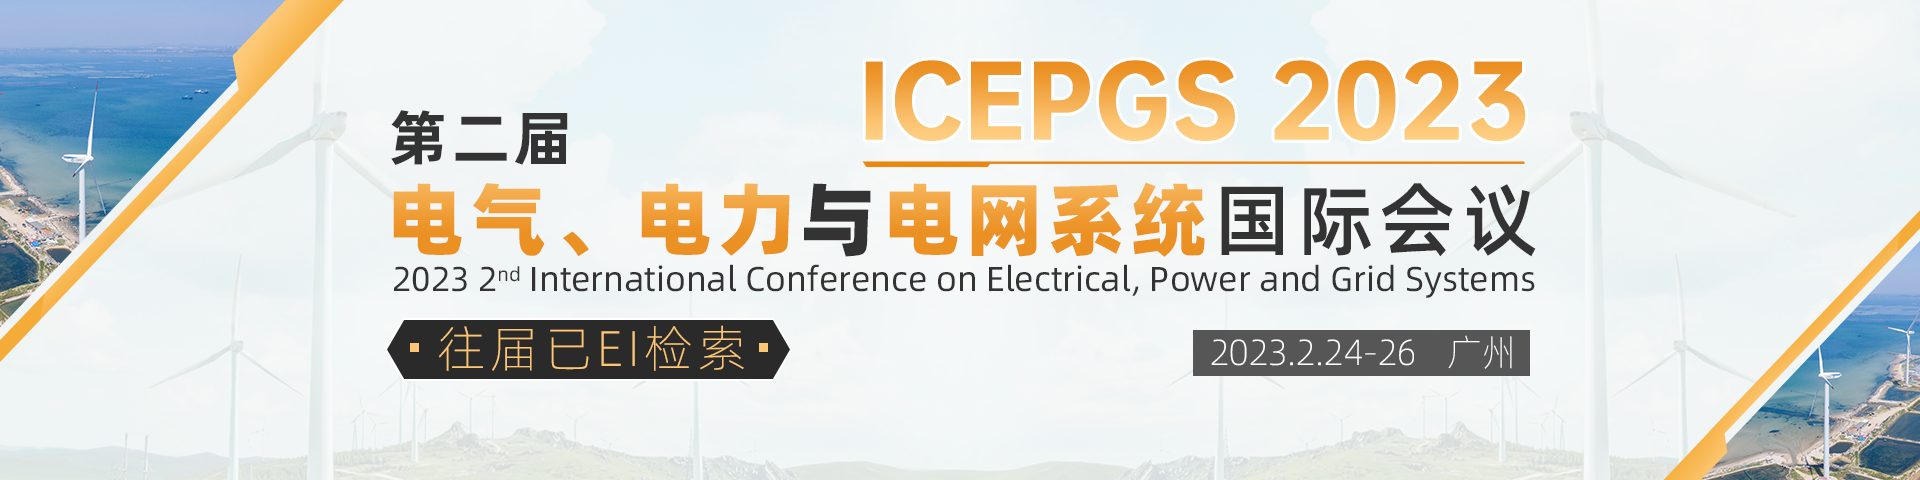 2月广州-ICEPGS-艾思平台.png